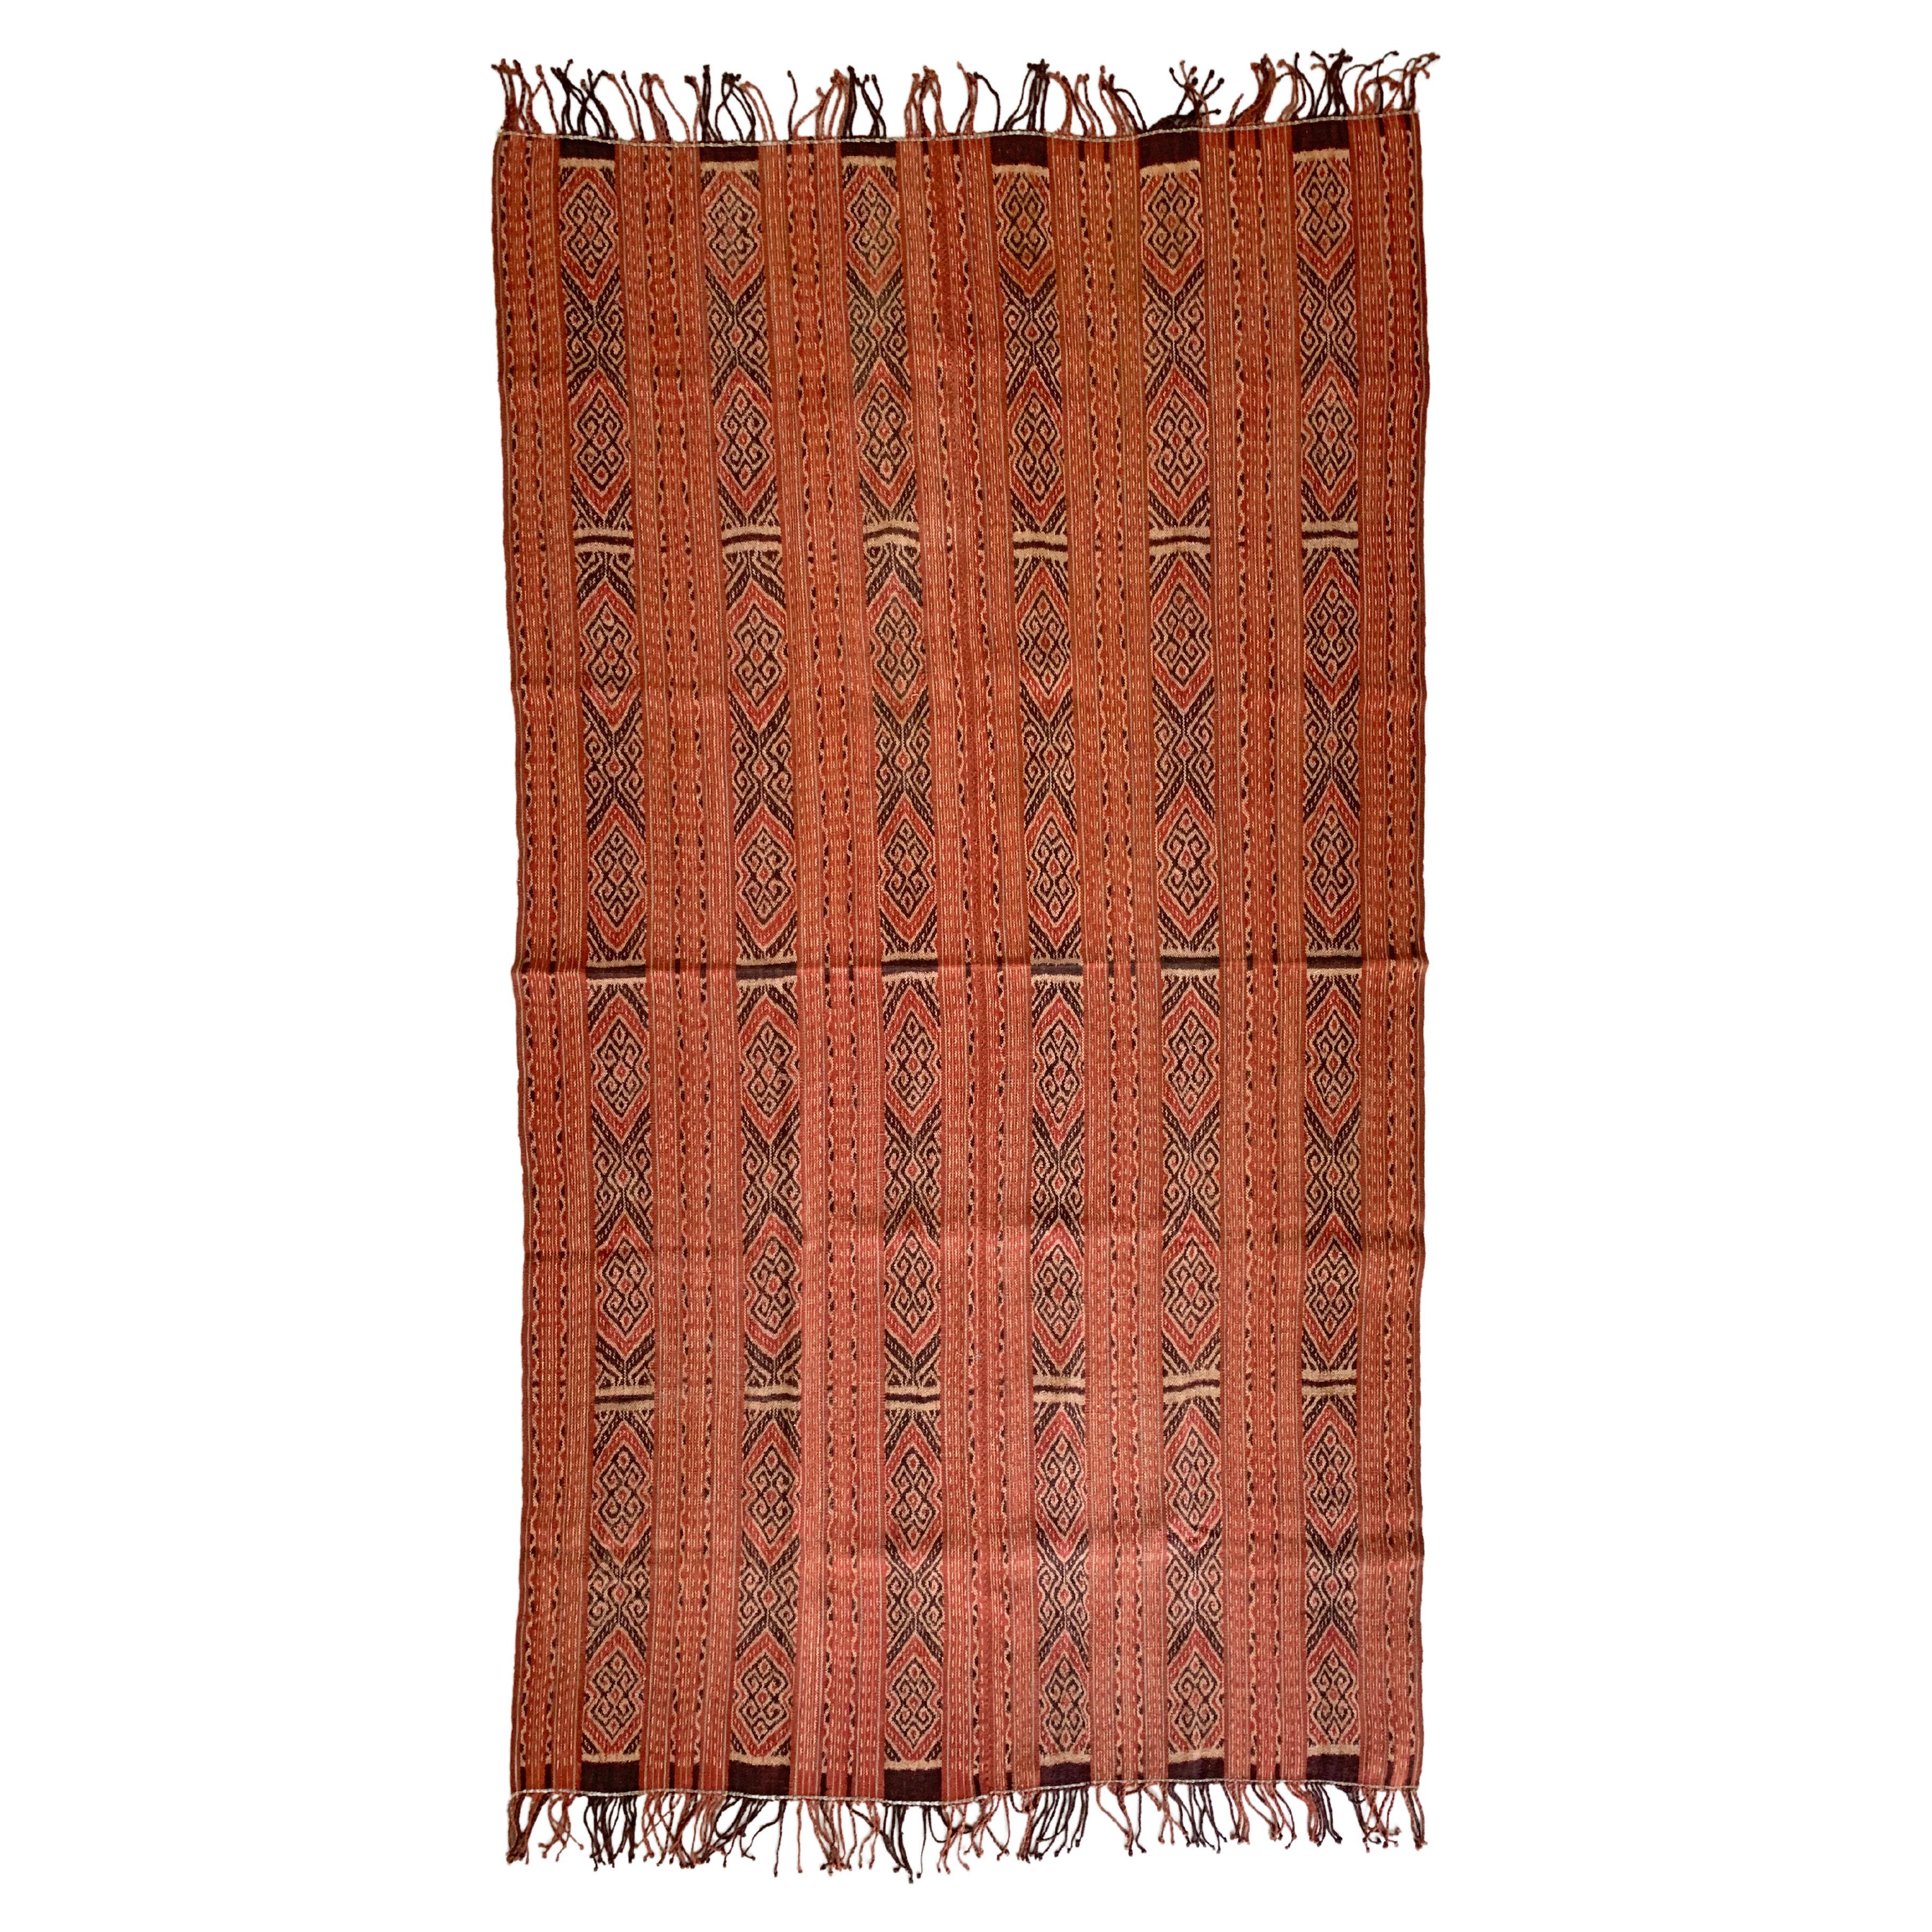 Ikat-Textilien von der Insel Timor, Indonesien